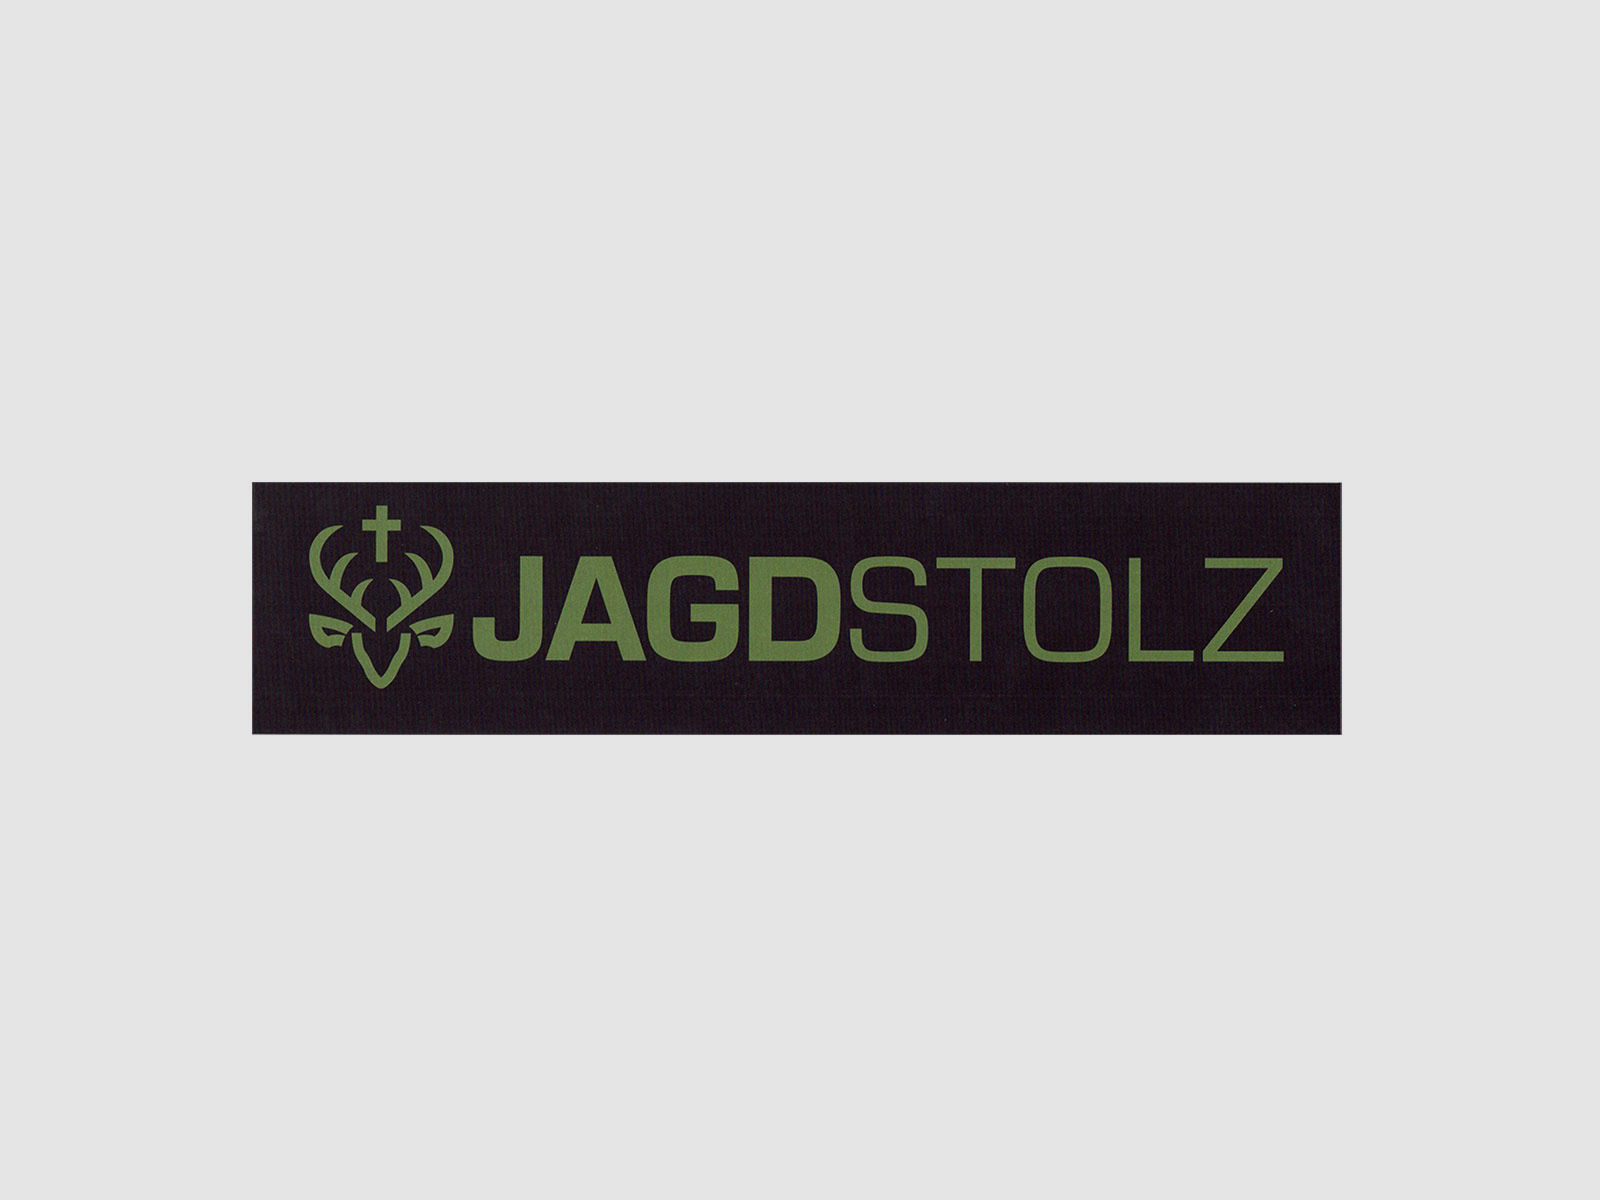 Jagdstolz Bumper Sticker Logo Oliv